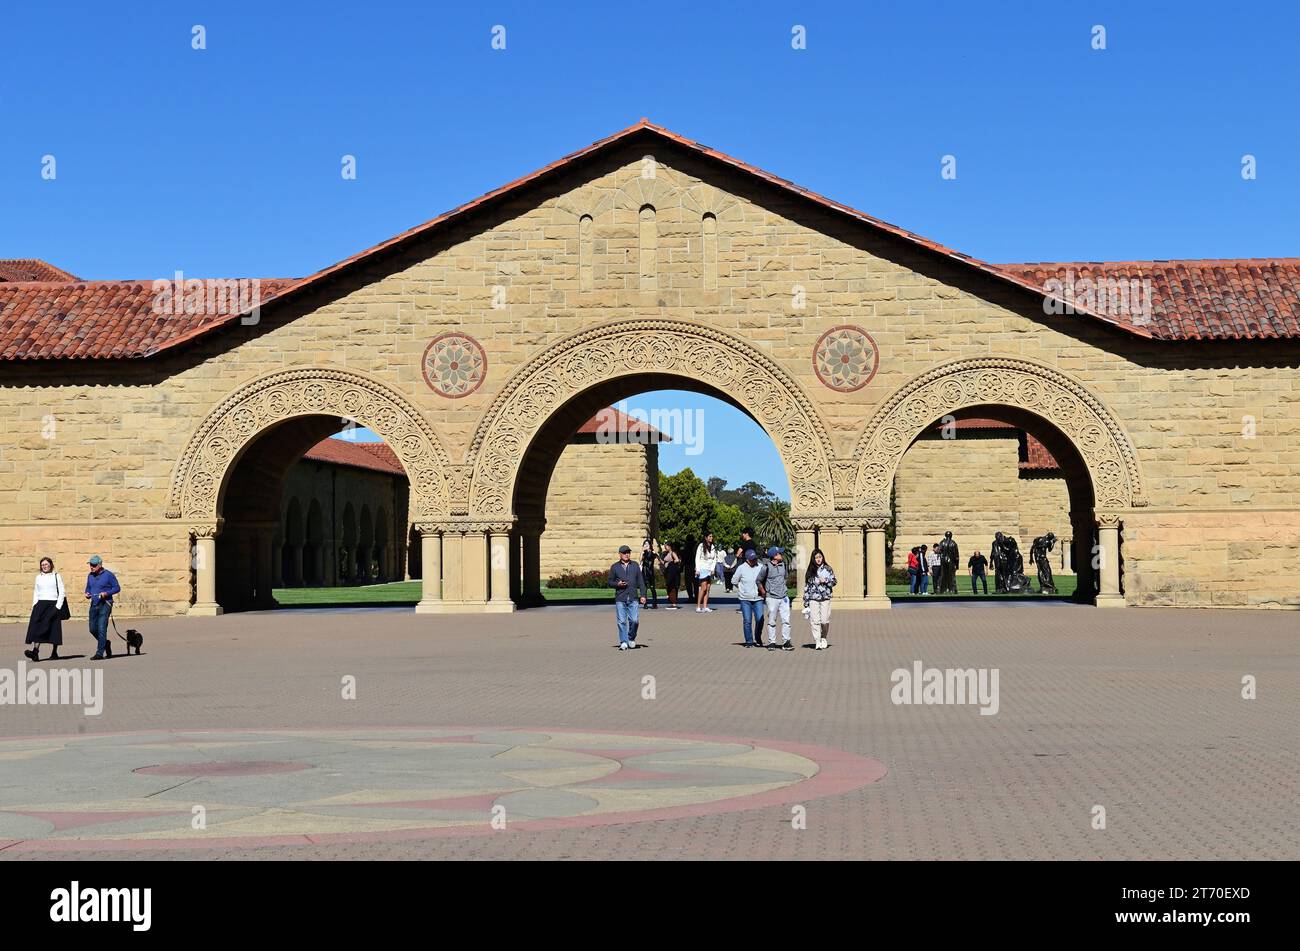 Stanford, Kalifornien, USA. Wunderschön detaillierte Bögen bieten Eintrittsportale zum Main Quad an der Stanford University. Stockfoto